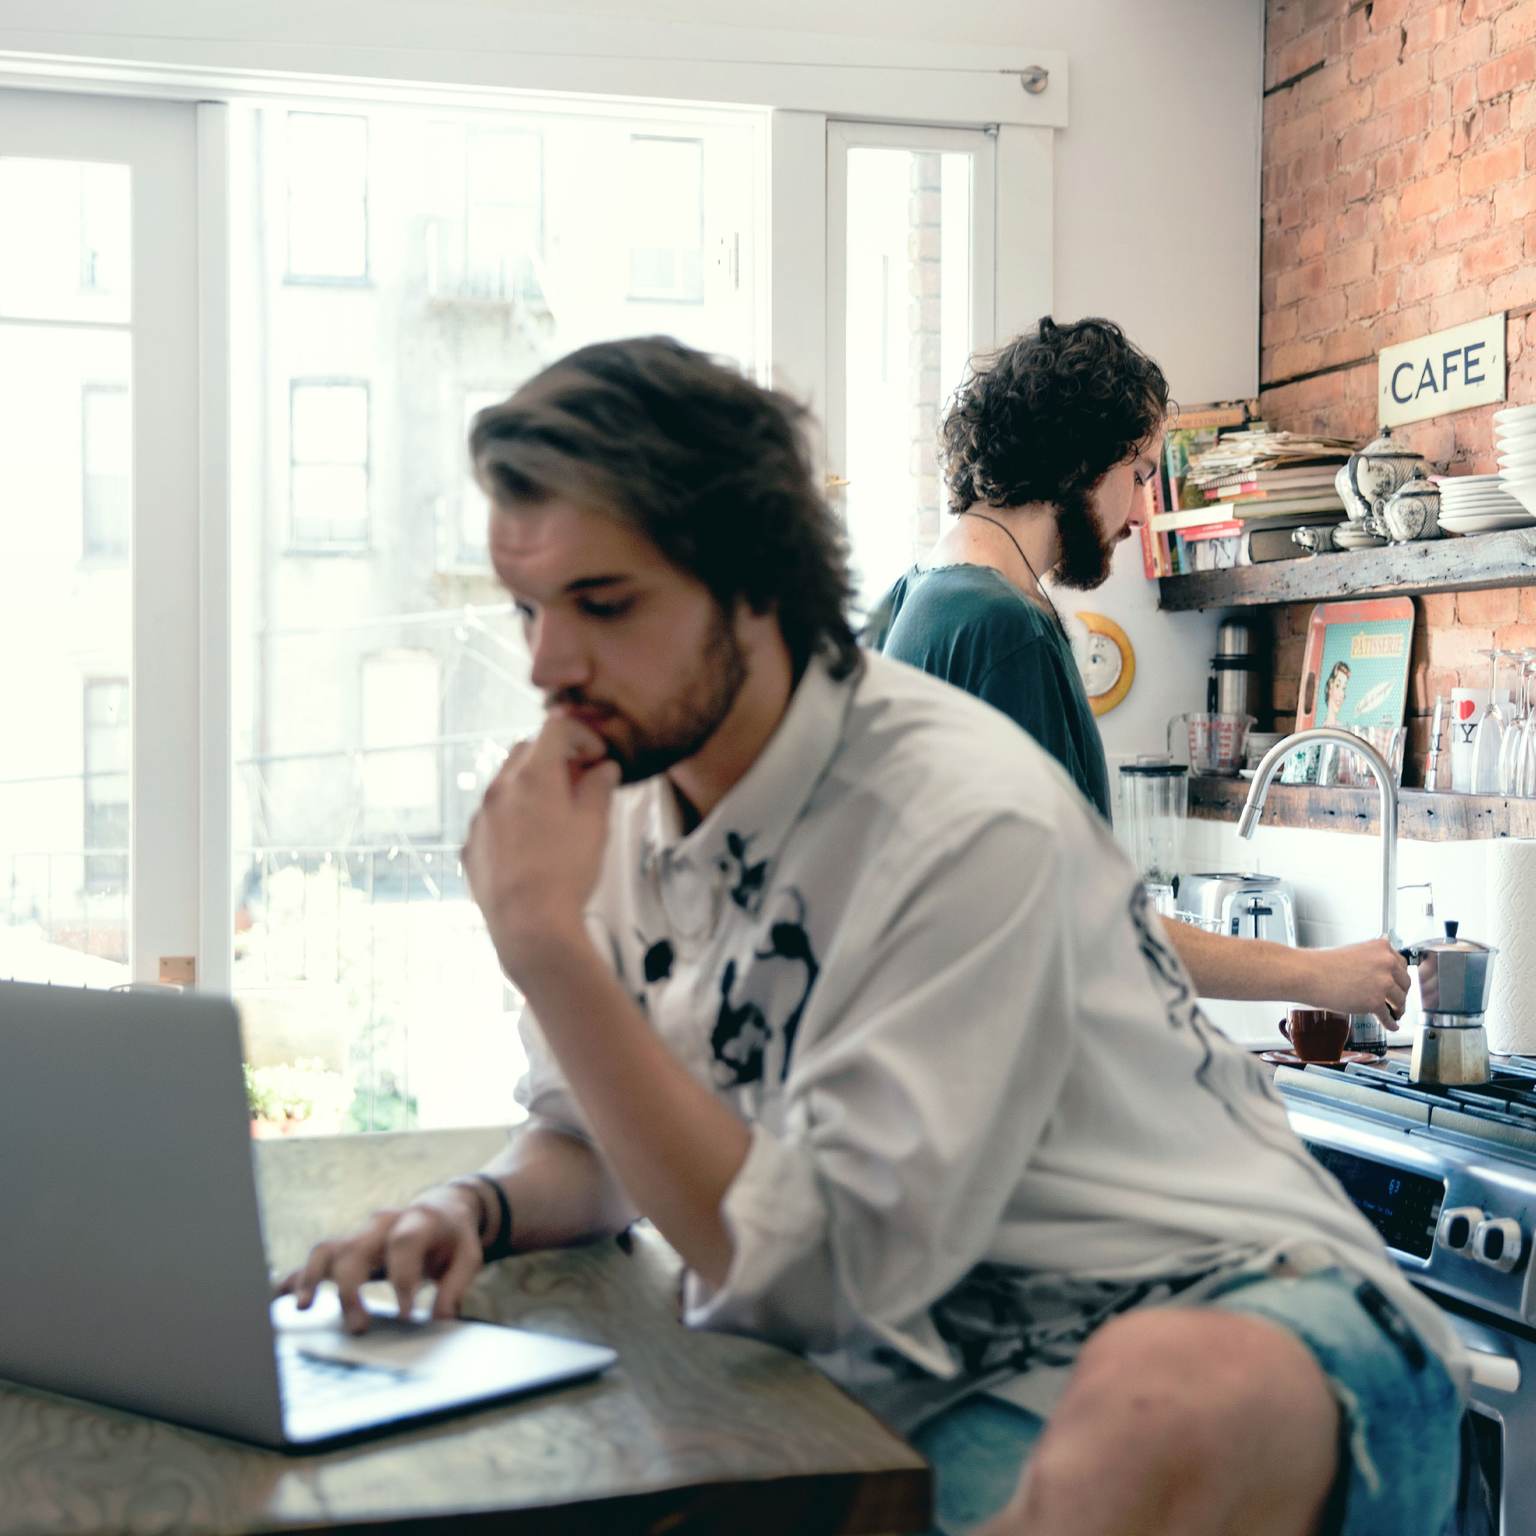 Ein Mann sitzt an einem Tisch und arbeitet an einem Laptop. Im Hintergrund kocht sich ein weiterer Mann Kaffee.